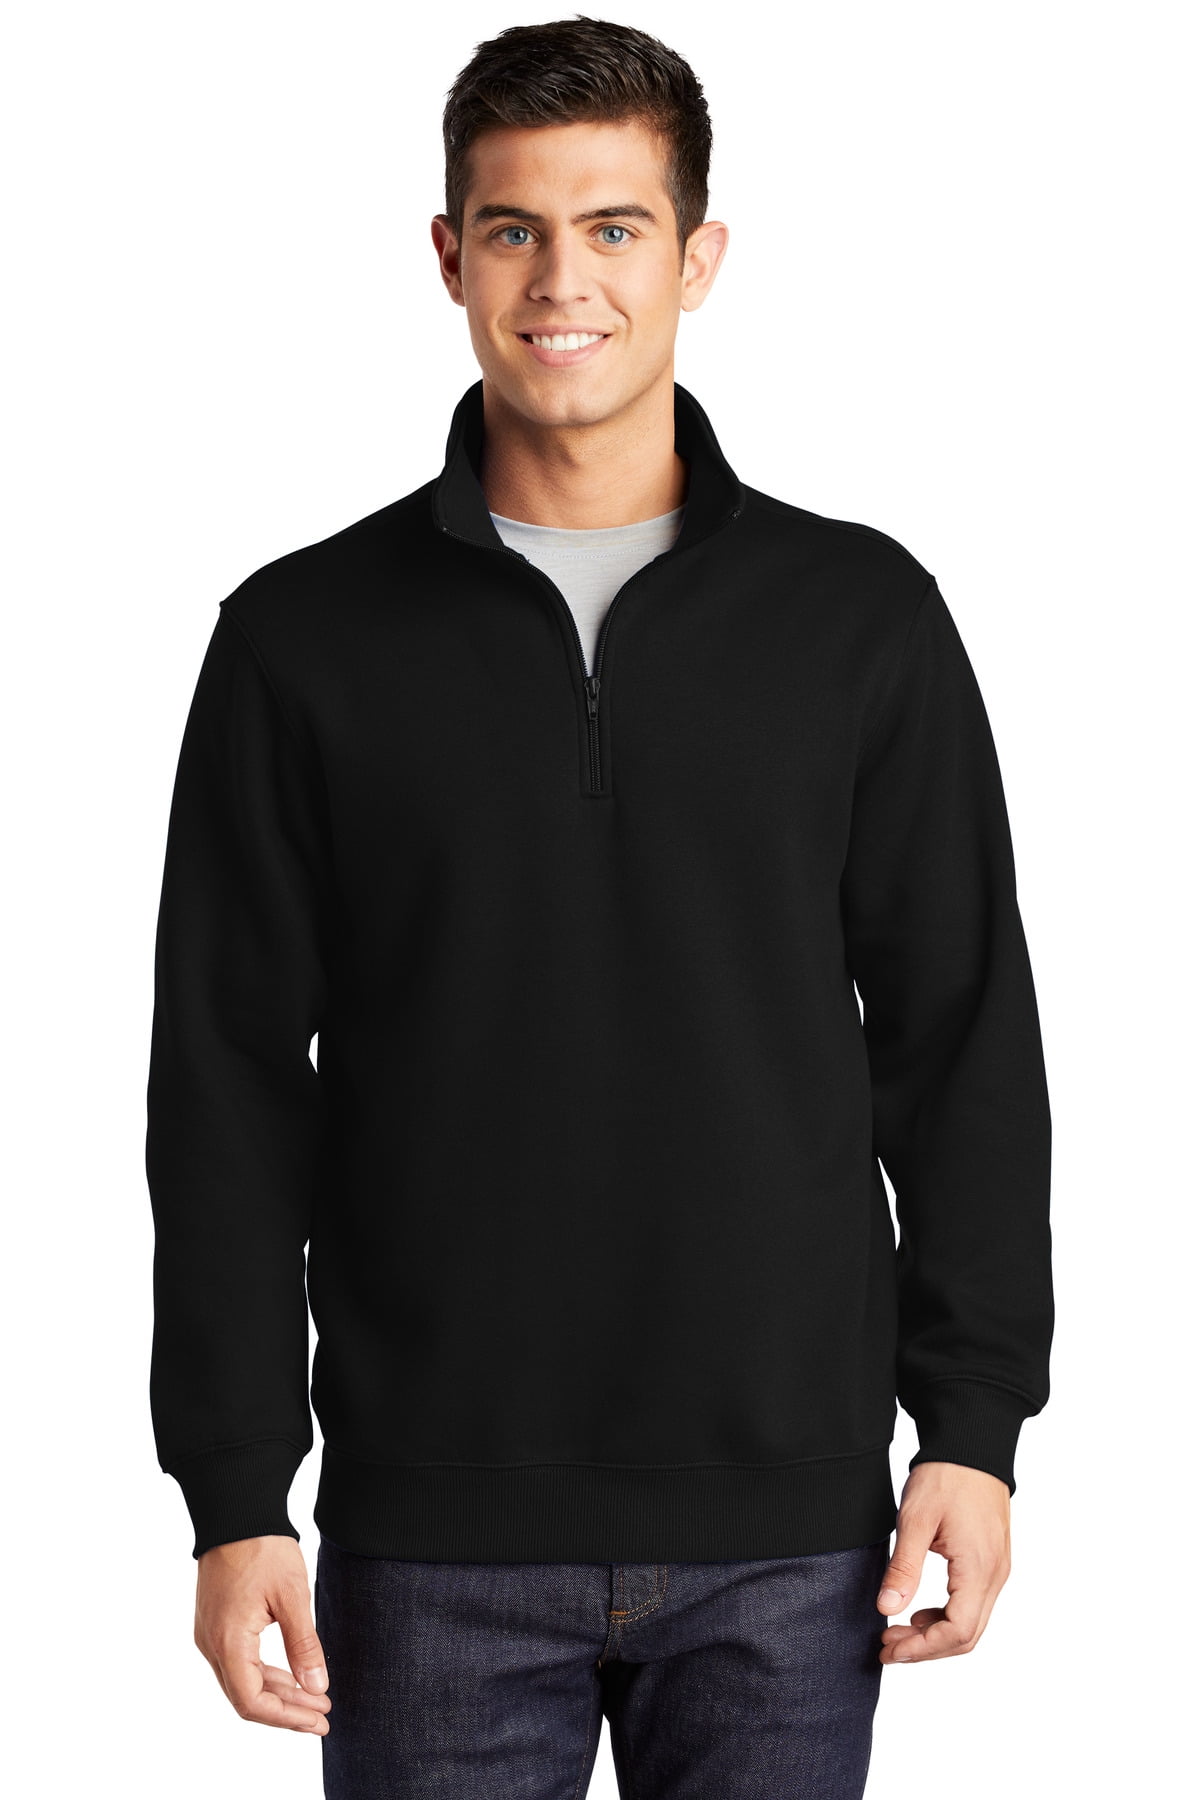 Sport-Tek Tall 1/4 Zip Sweatshirt-LT (Black) - Walmart.com